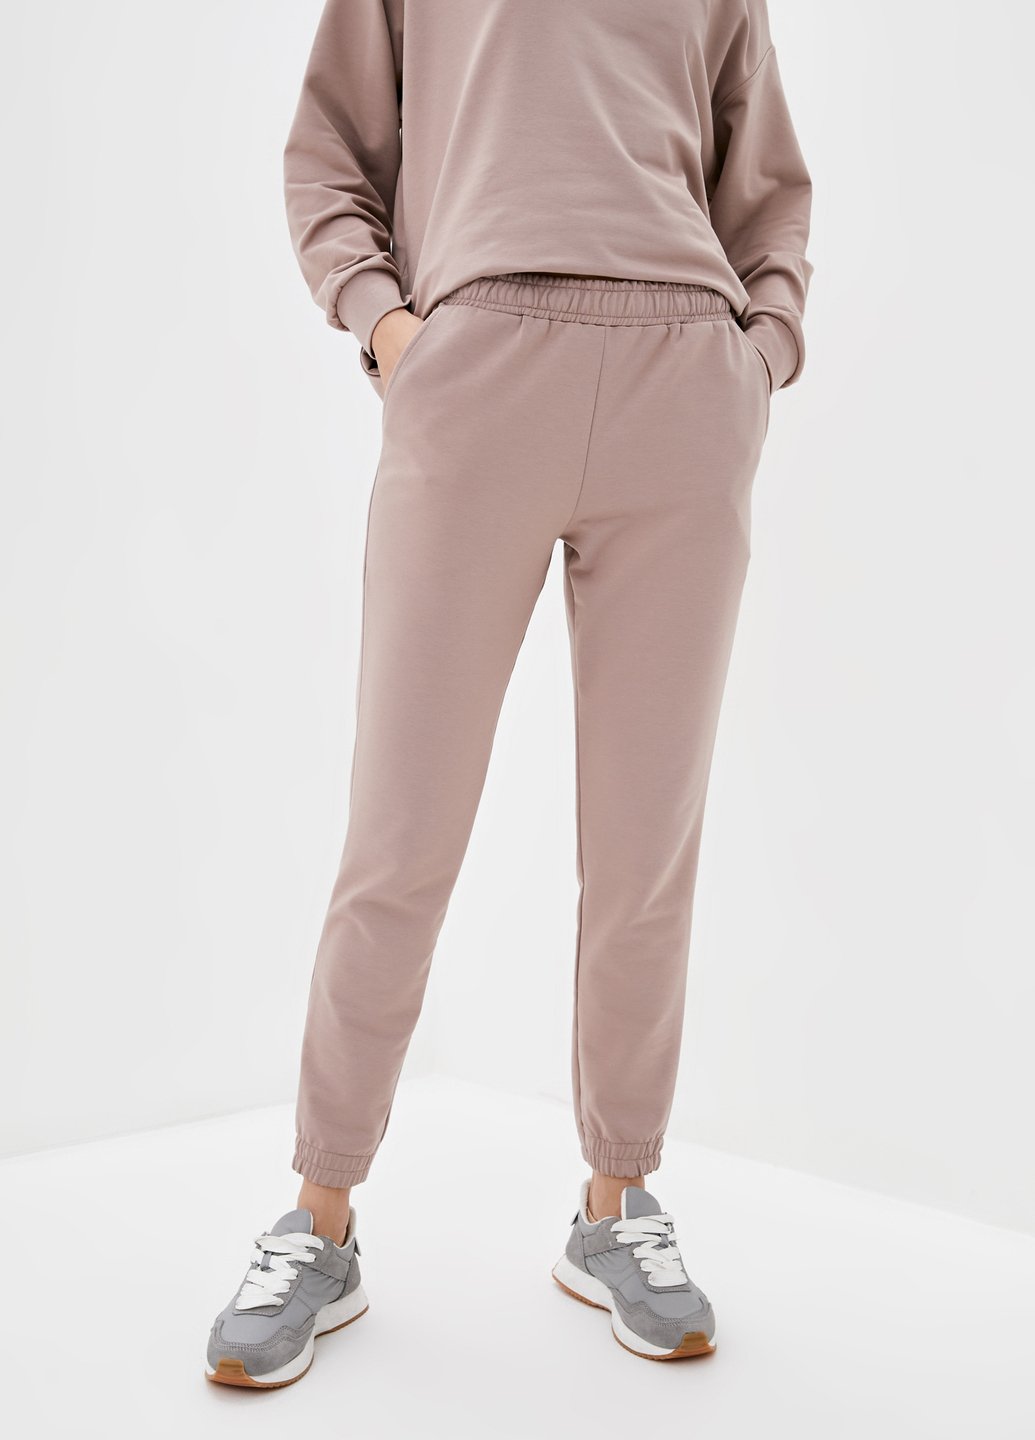 Купить Спортивные штаны женские Merlini Латина 600000018 - Пудровый, 42-44 в интернет-магазине